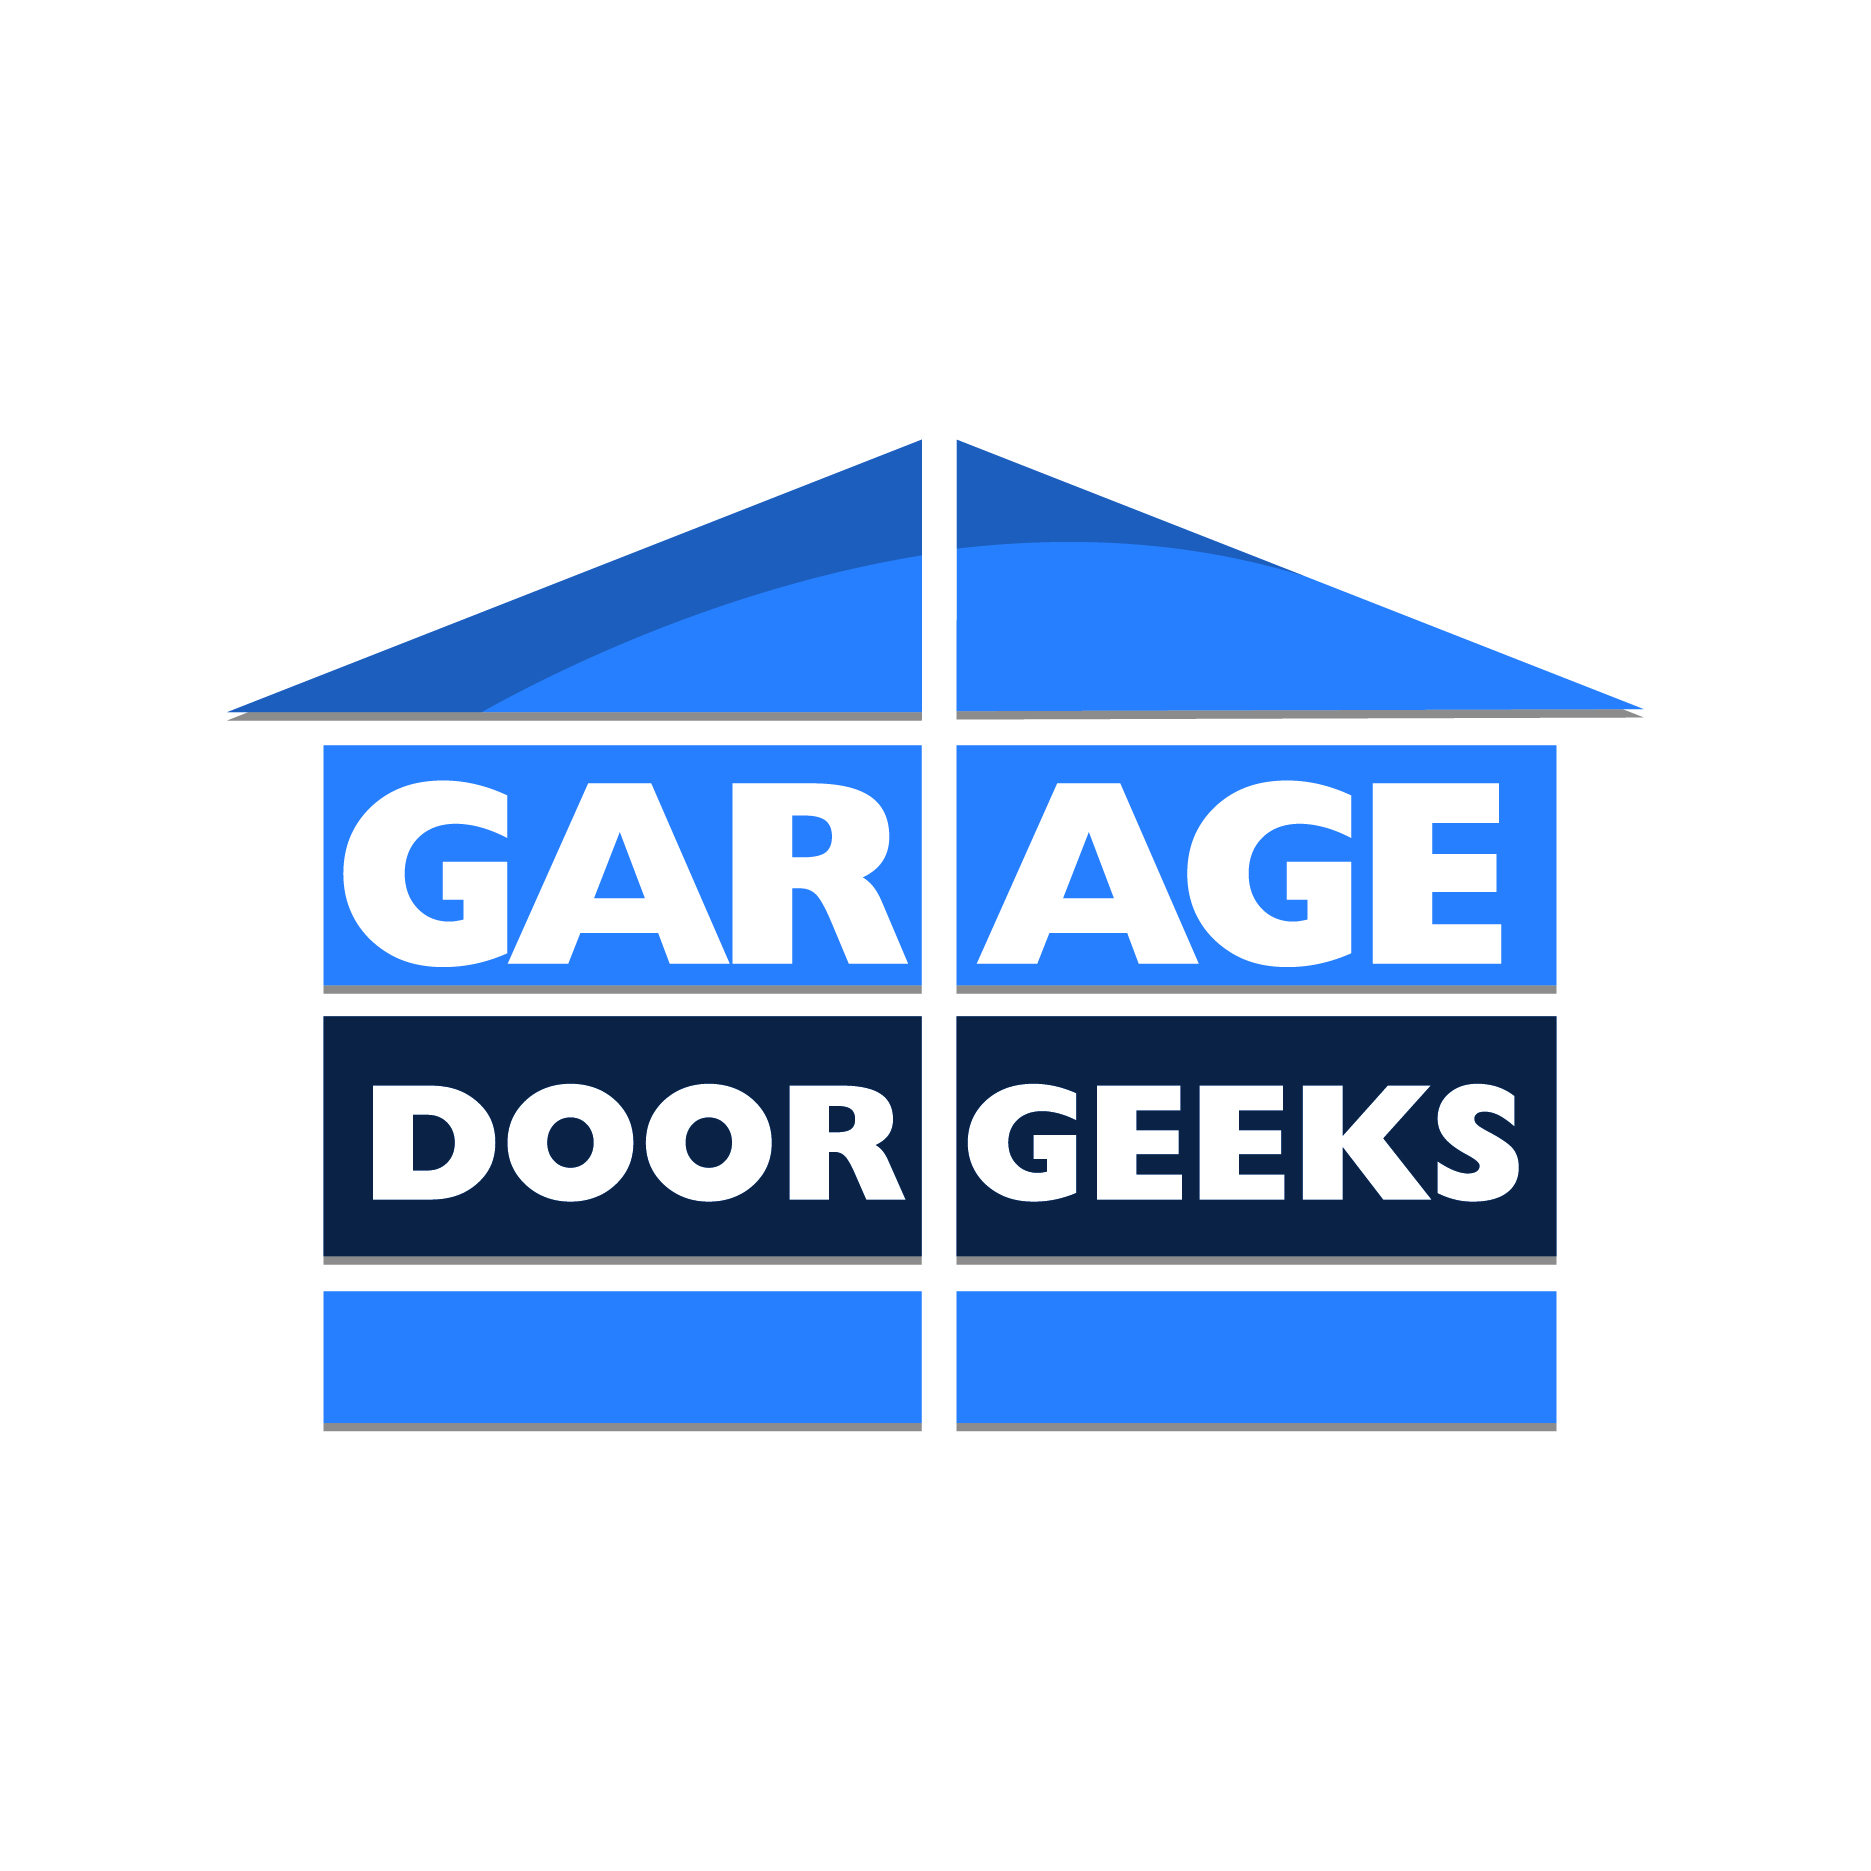 Garage Door Geeks's logo